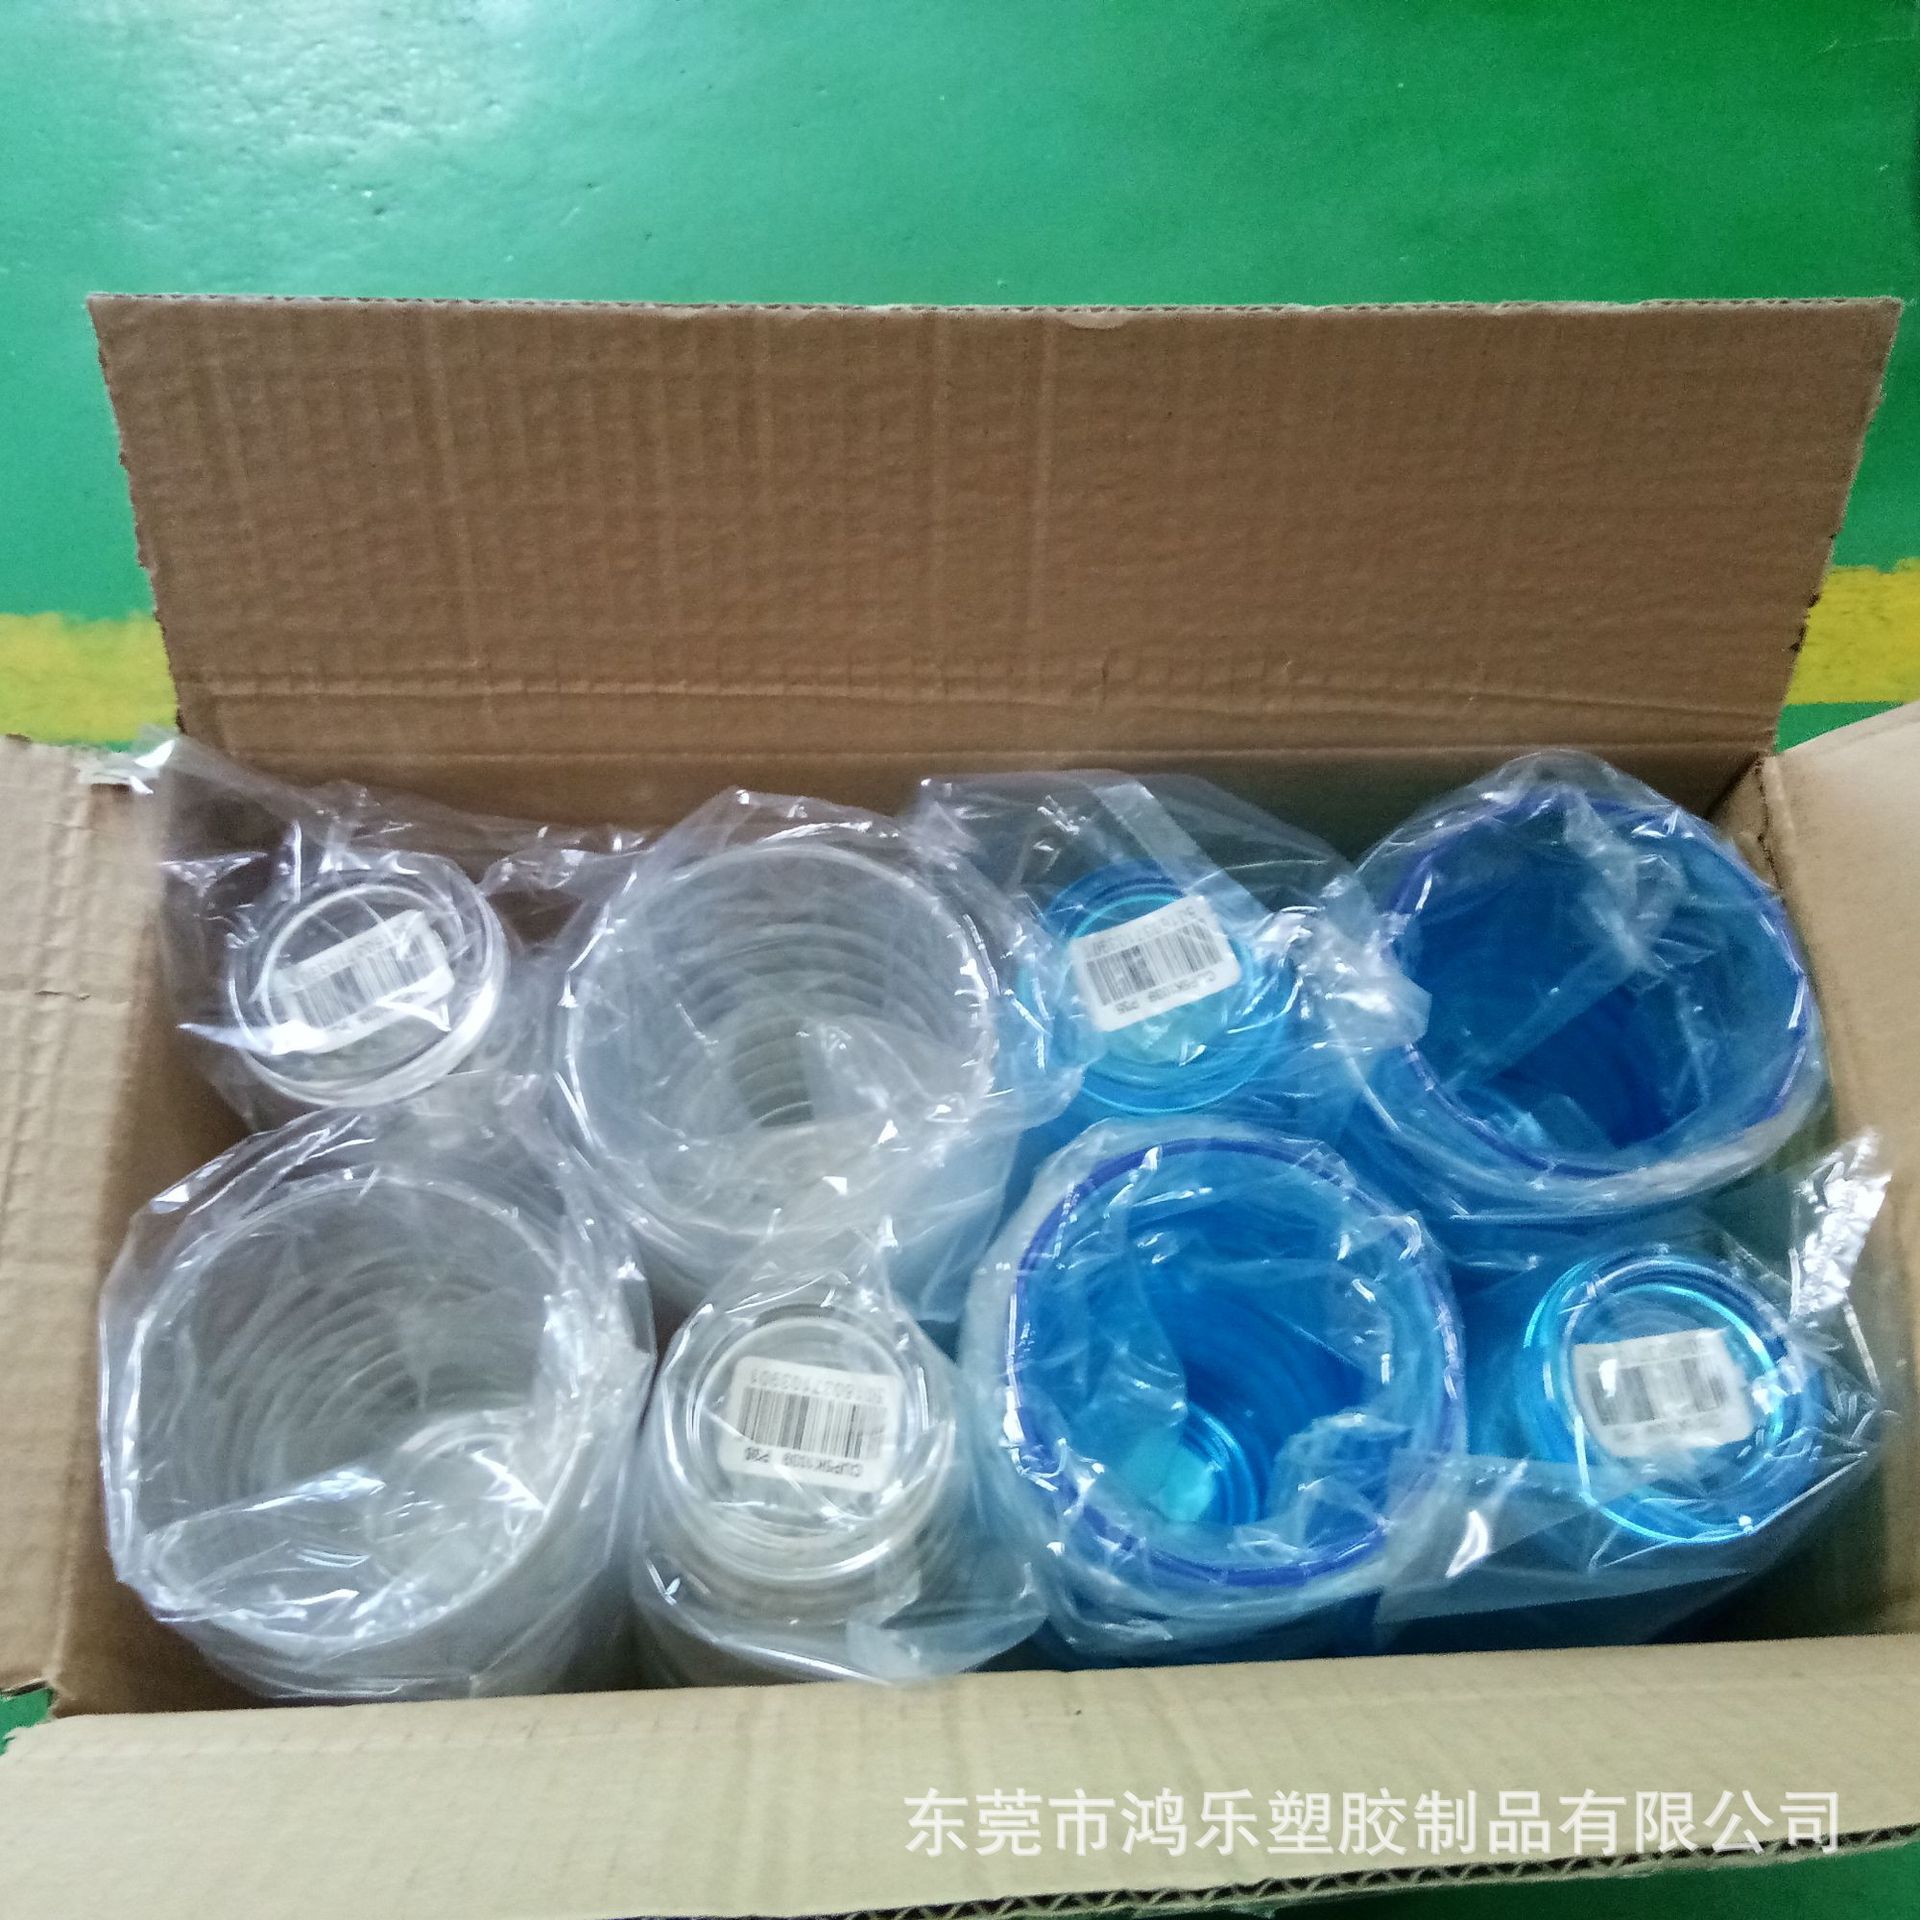 东莞厂家直销12oz塑料透明螺纹冷饮杯果汁饮料杯PS食品级塑胶杯示例图10